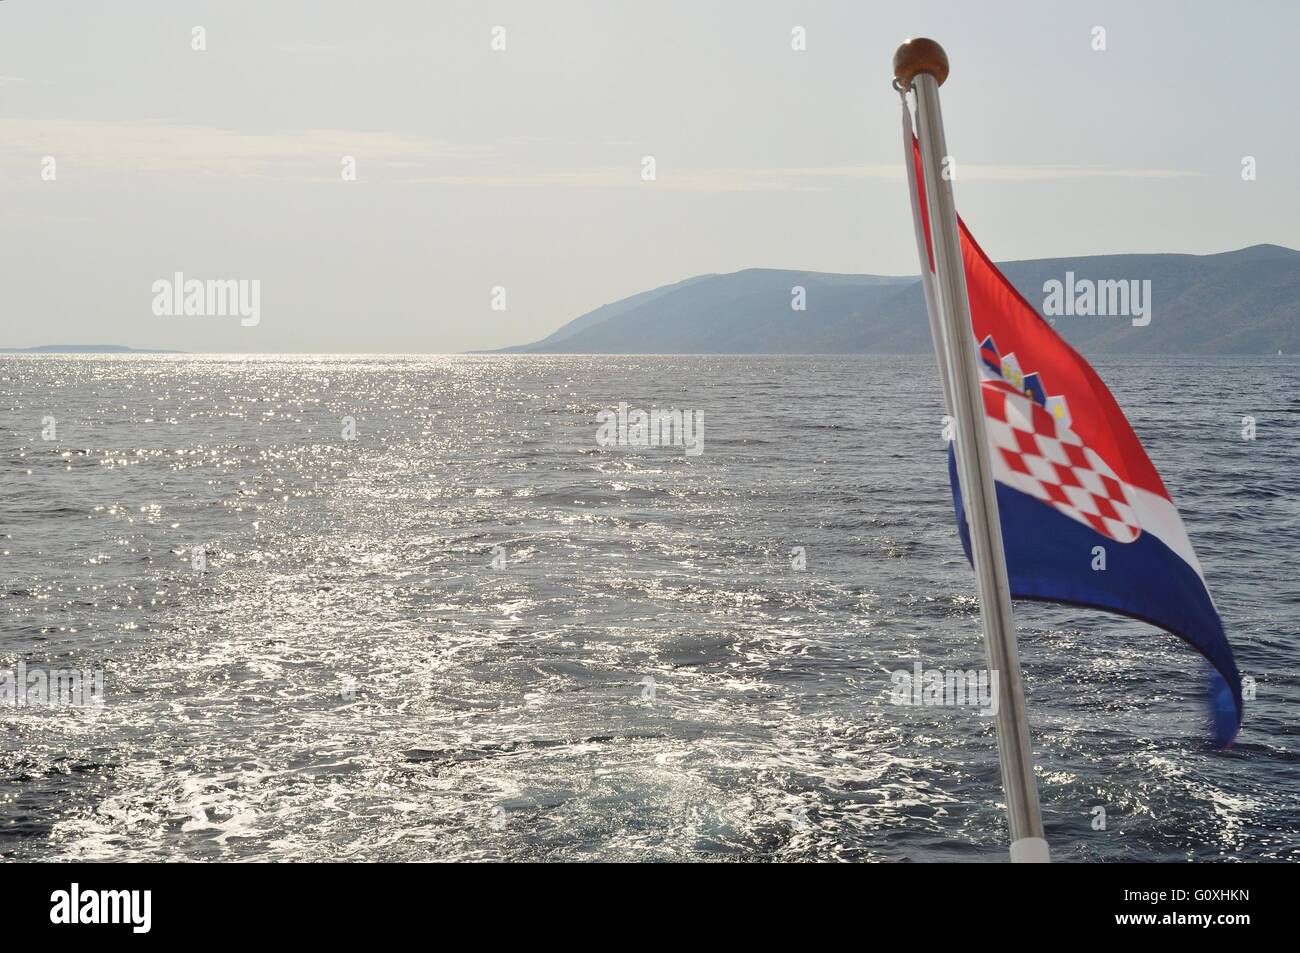 Mare adriatico in Croazia con isola di Brac in background. vista dalla nave. la bandiera croata nel lato destro del telaio Foto Stock